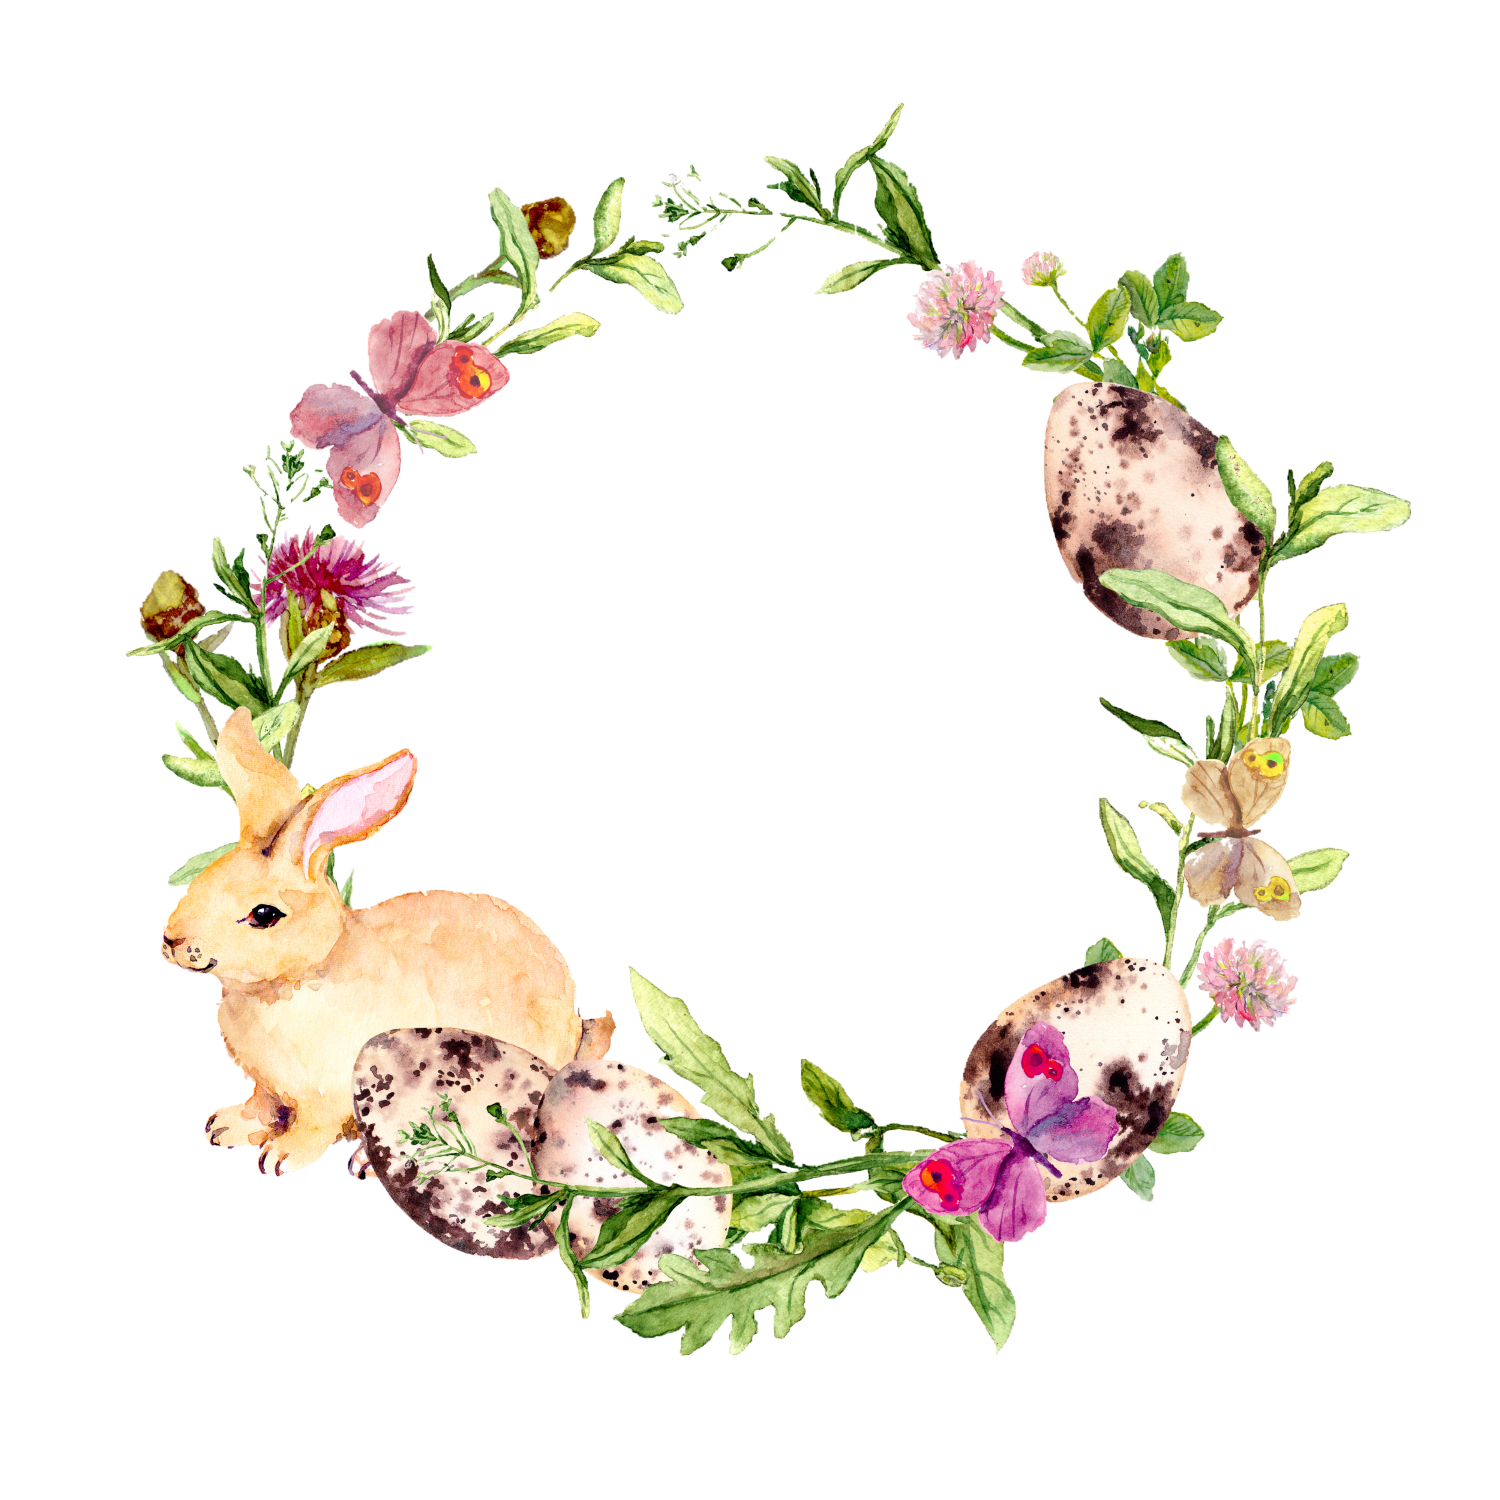 Blomsterkrans med en liten kanin